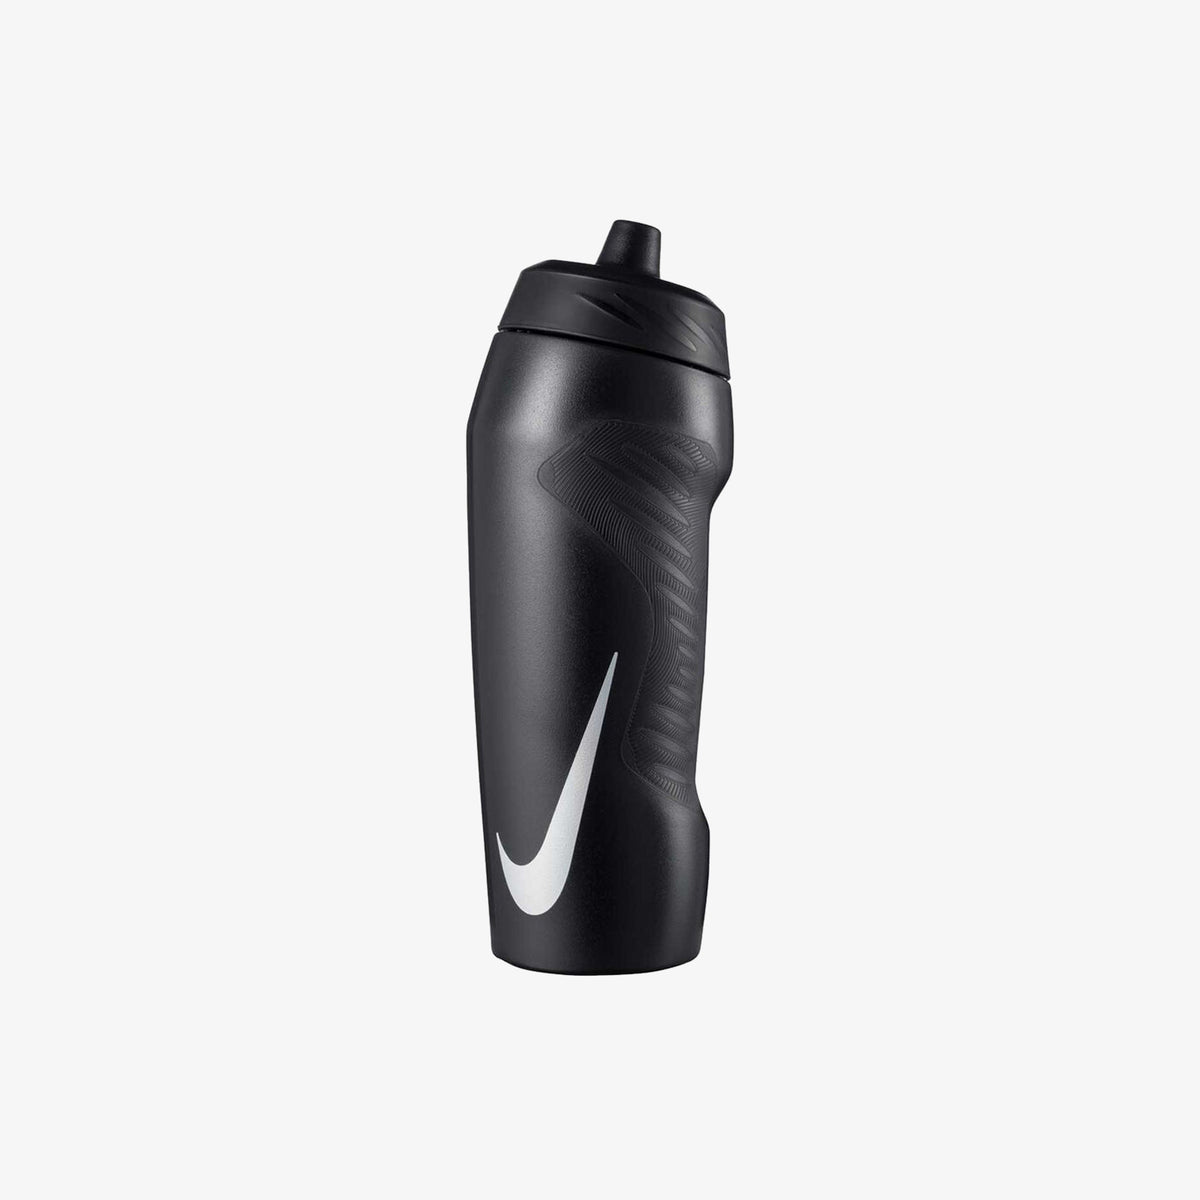 Nike Hyperfuel Water Bottle 1 litre - Black